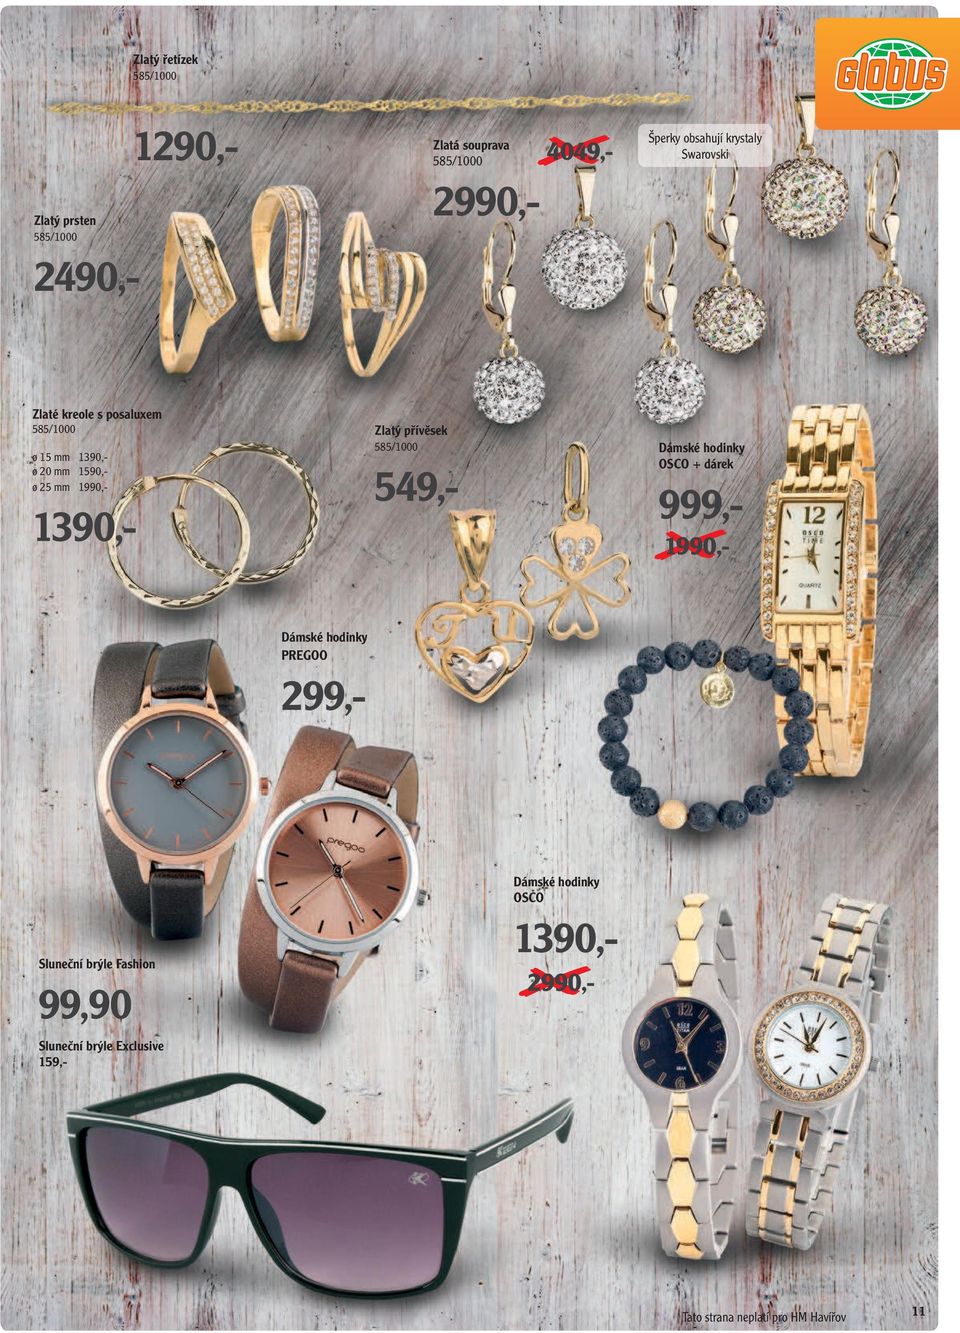 mm 1590,- ø 25 mm 1990,- 1390,- Zlatý přívěsek 585/1000 549,- Dámské hodinky OSCO + dárek 1990,- Dámské